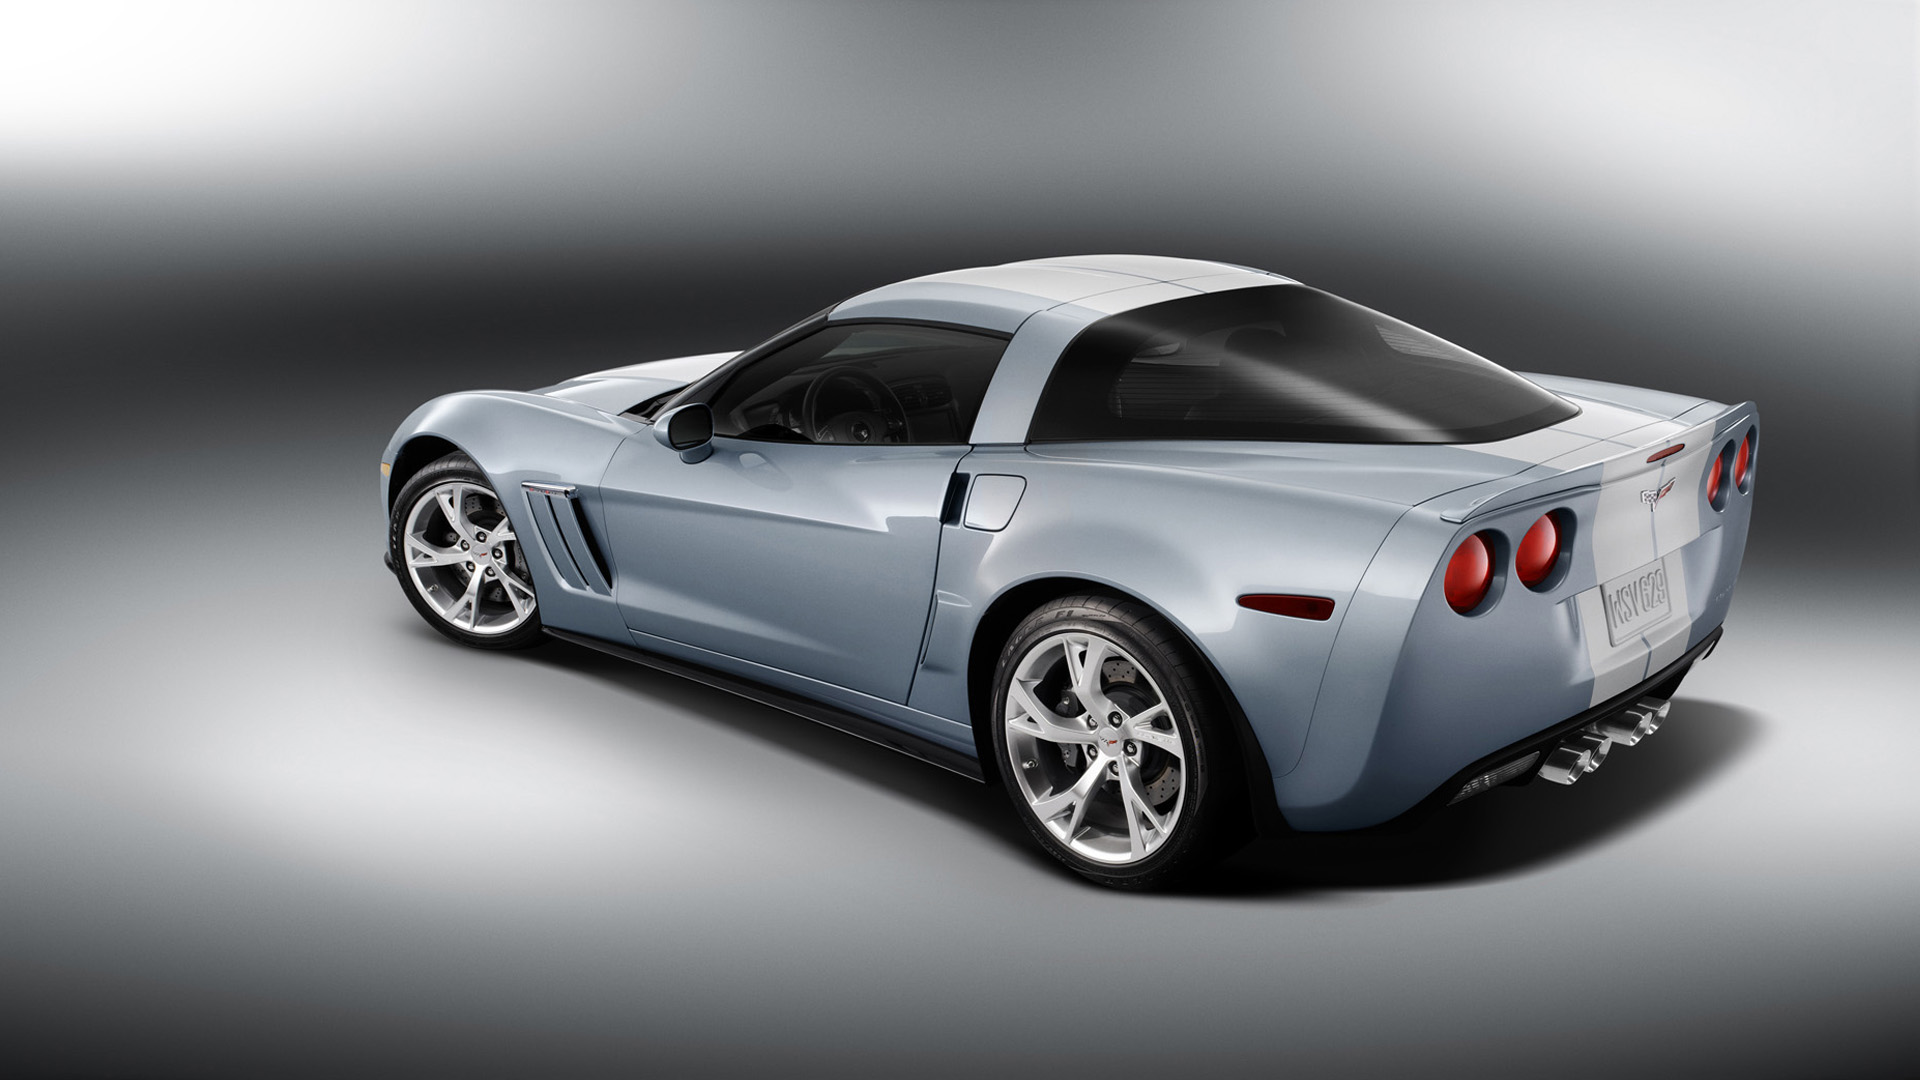 2011 Corvette Wallpapers